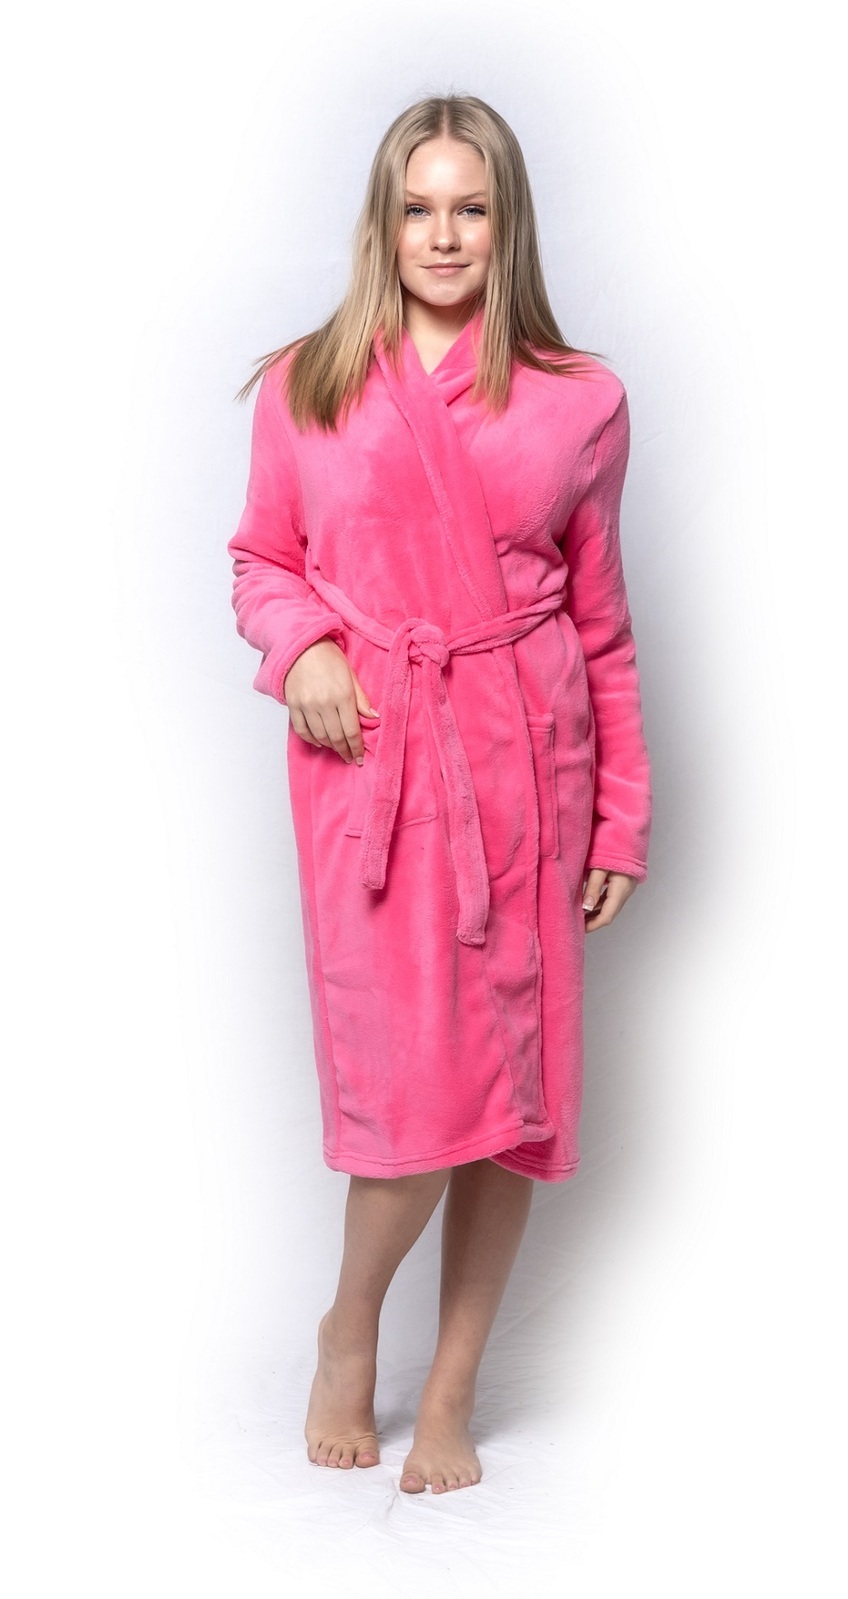 Women's Long Fleece Lined Bathrobe By Heat Holders | Robe For Winter